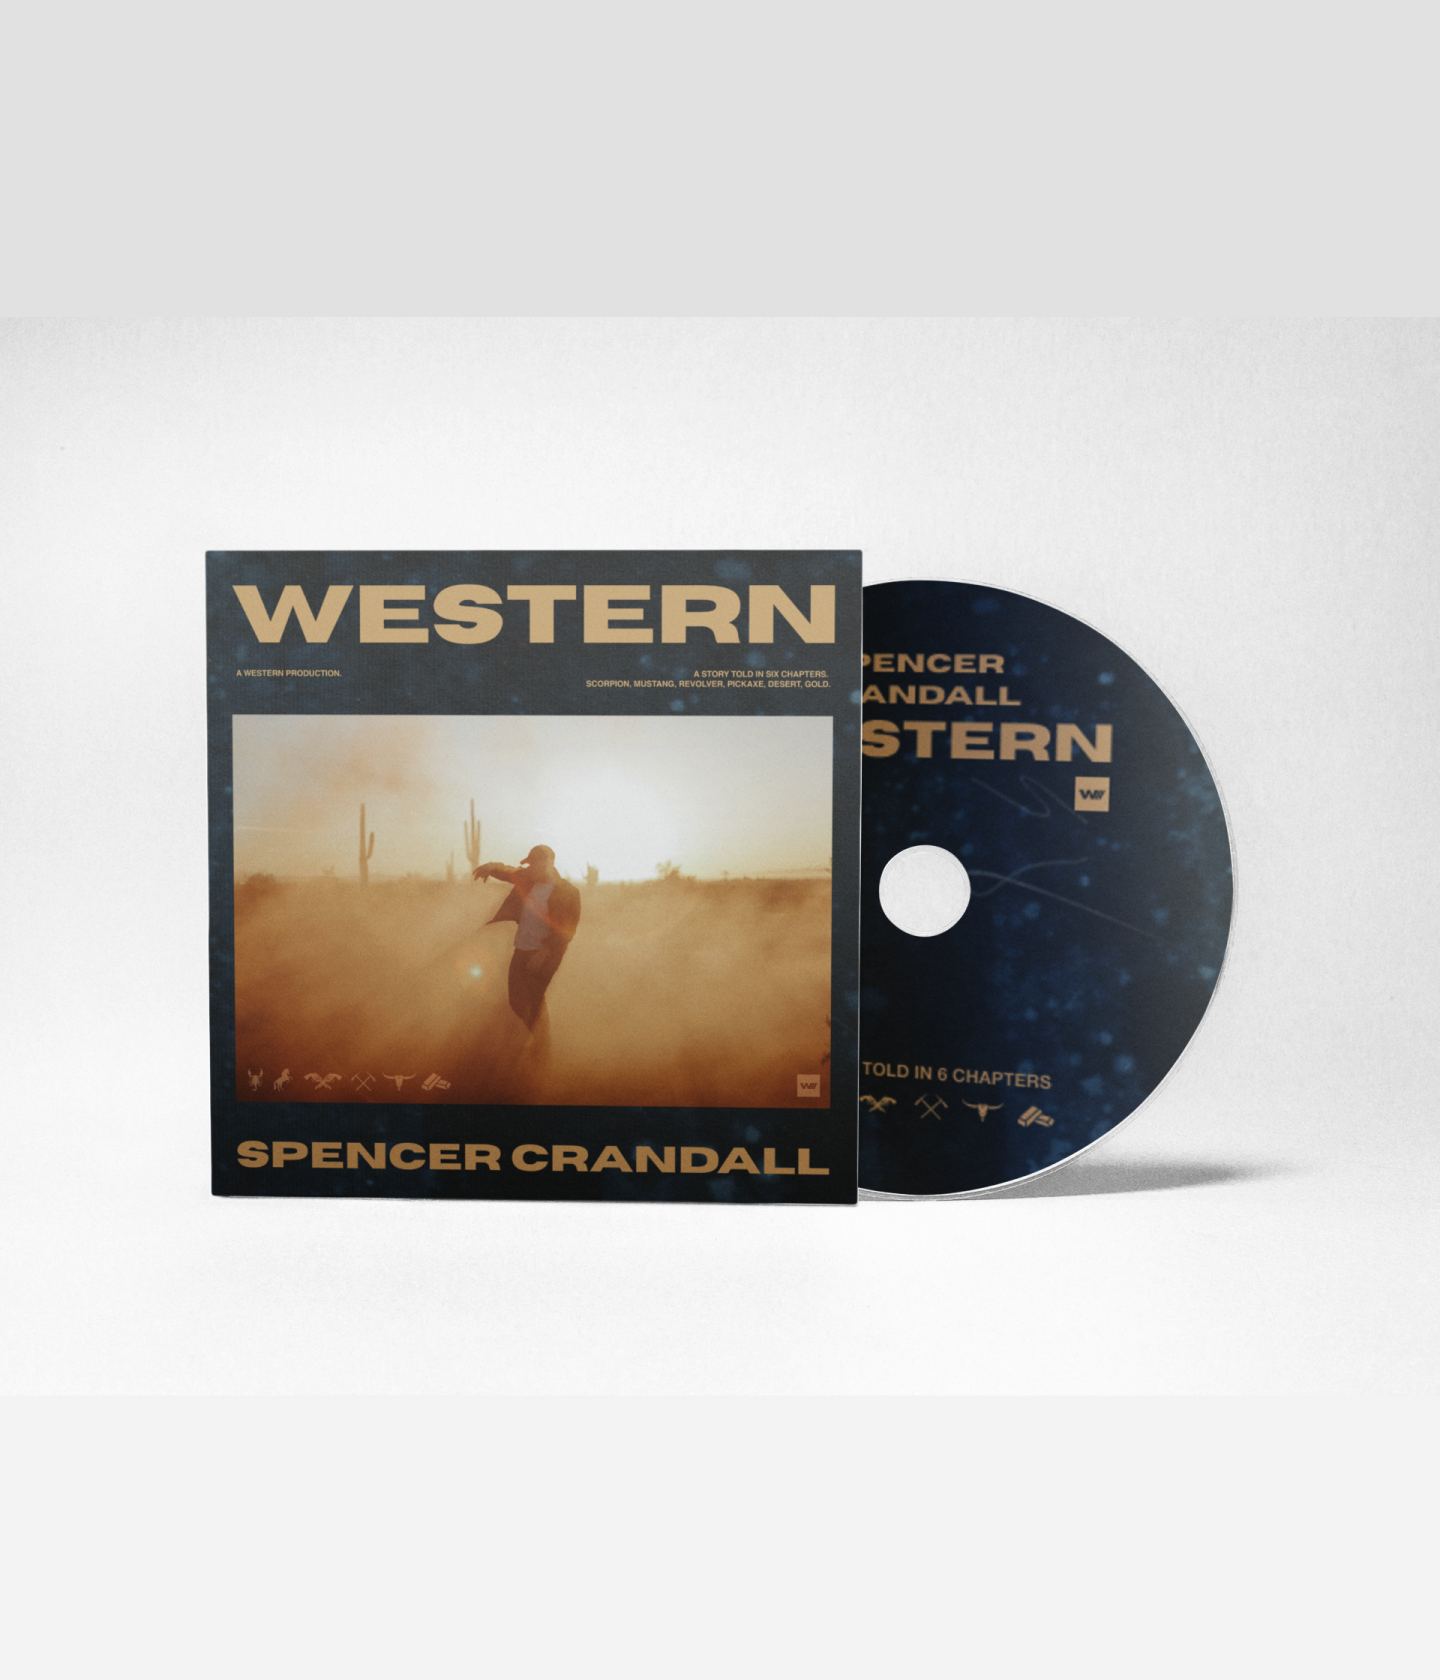 Western CD